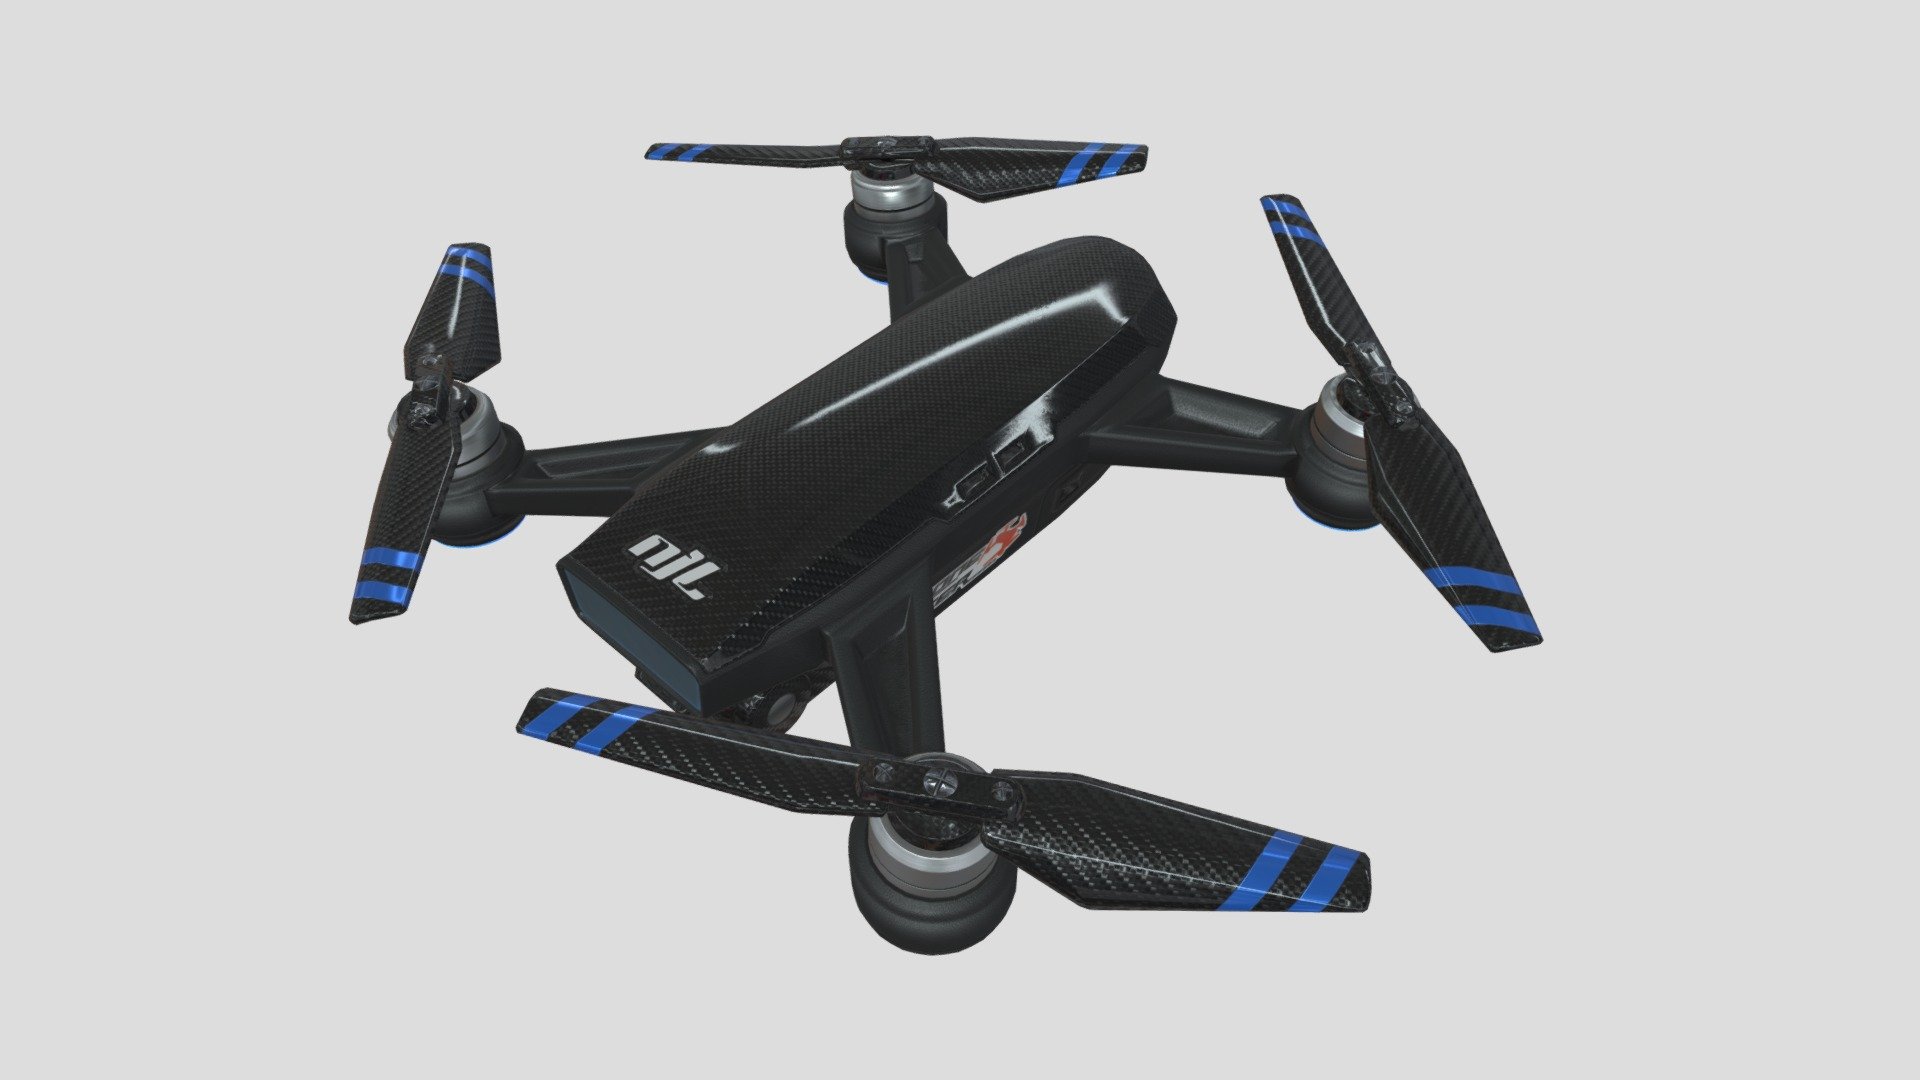 Modern technology carbon fiber camera drone
现代科技碳纤维摄像头无人机 - Modern technology carbon fiber camera drone - 3D model by Jackey&Design (@1394725324zhang) 3d model